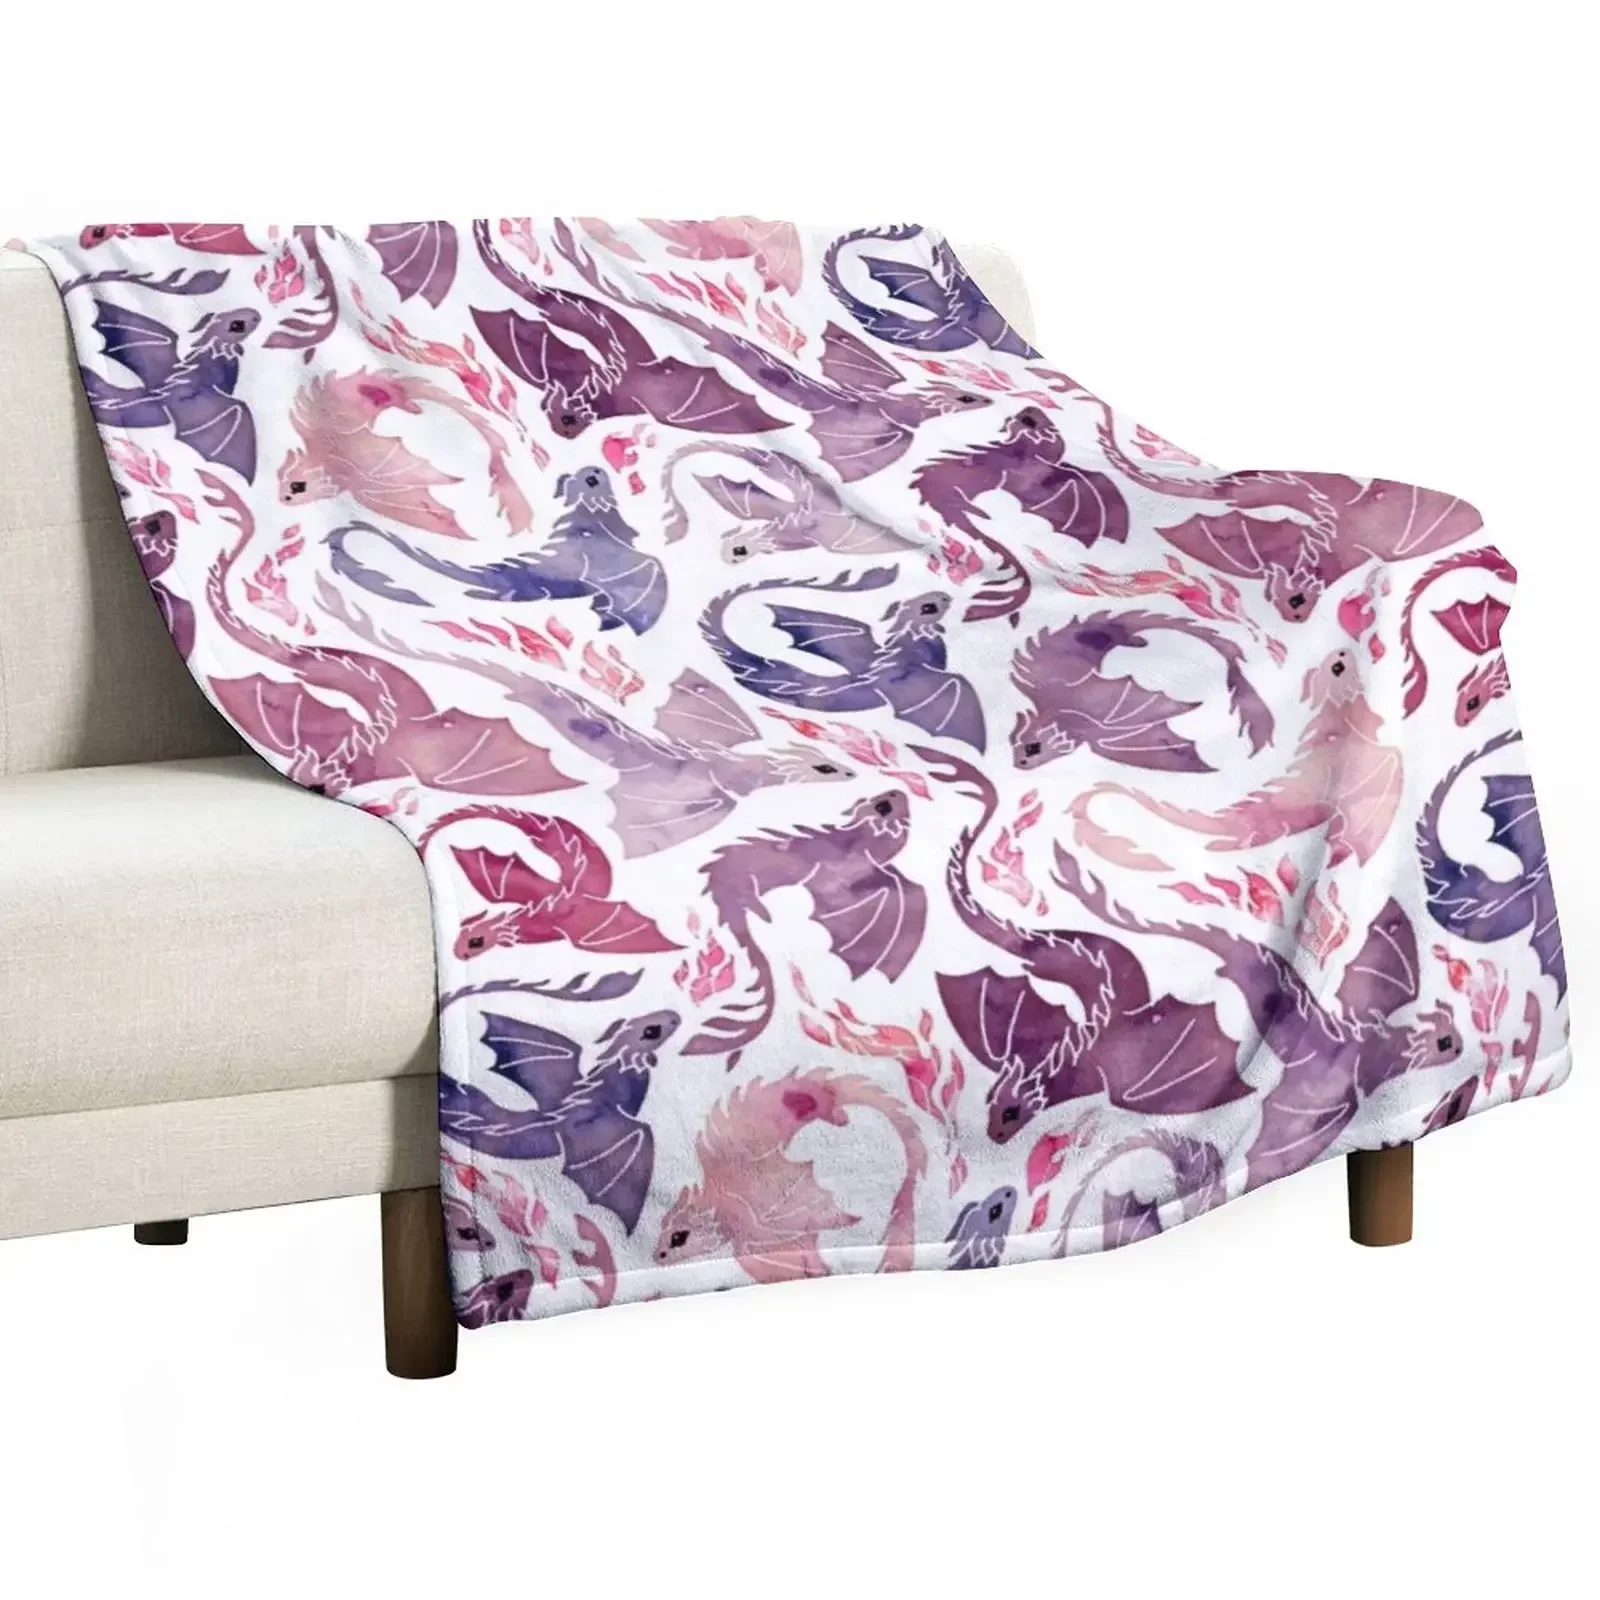 

Розовое и фиолетовое одеяло Dragon fire, одеяла для детей, тепловые одеяла для путешествий, Плюшевые красивые одеяла